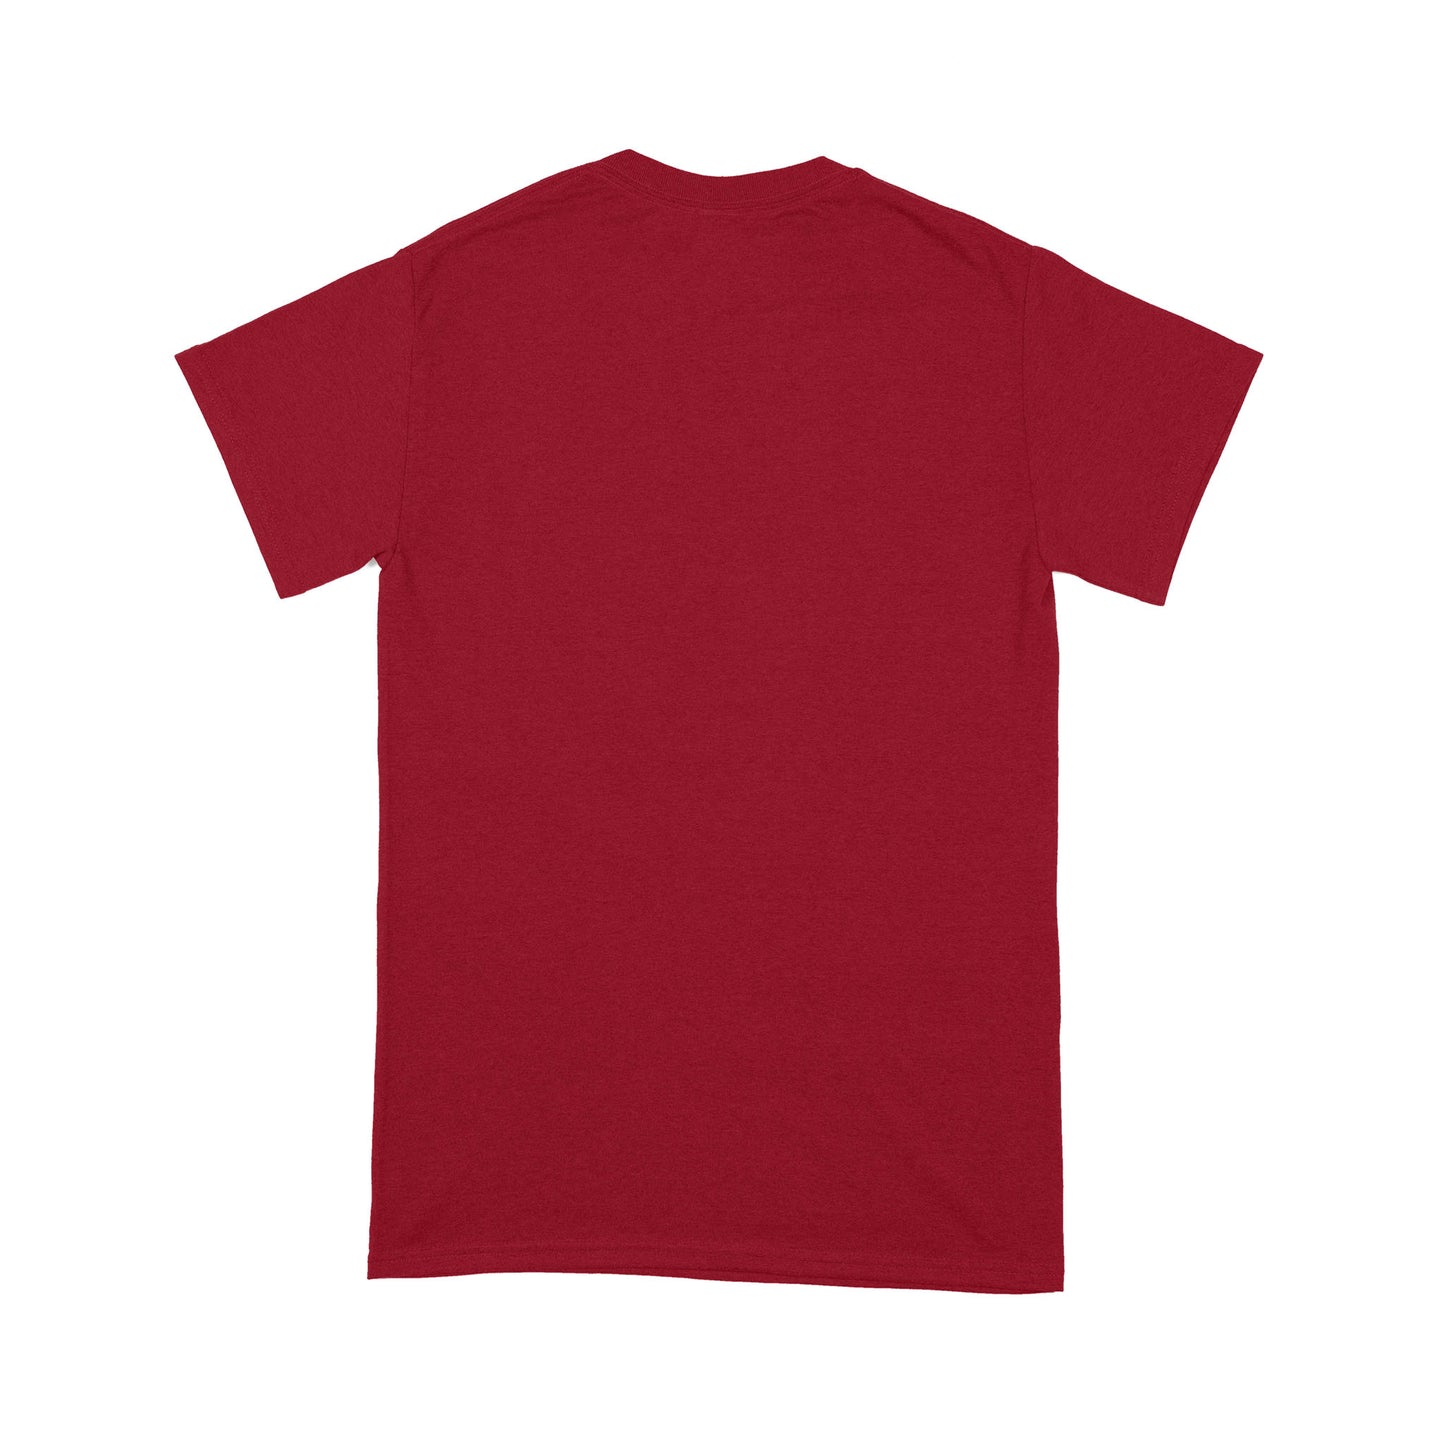 Upside Down Unisex Standard T-Shirt - Unbeaten Beat